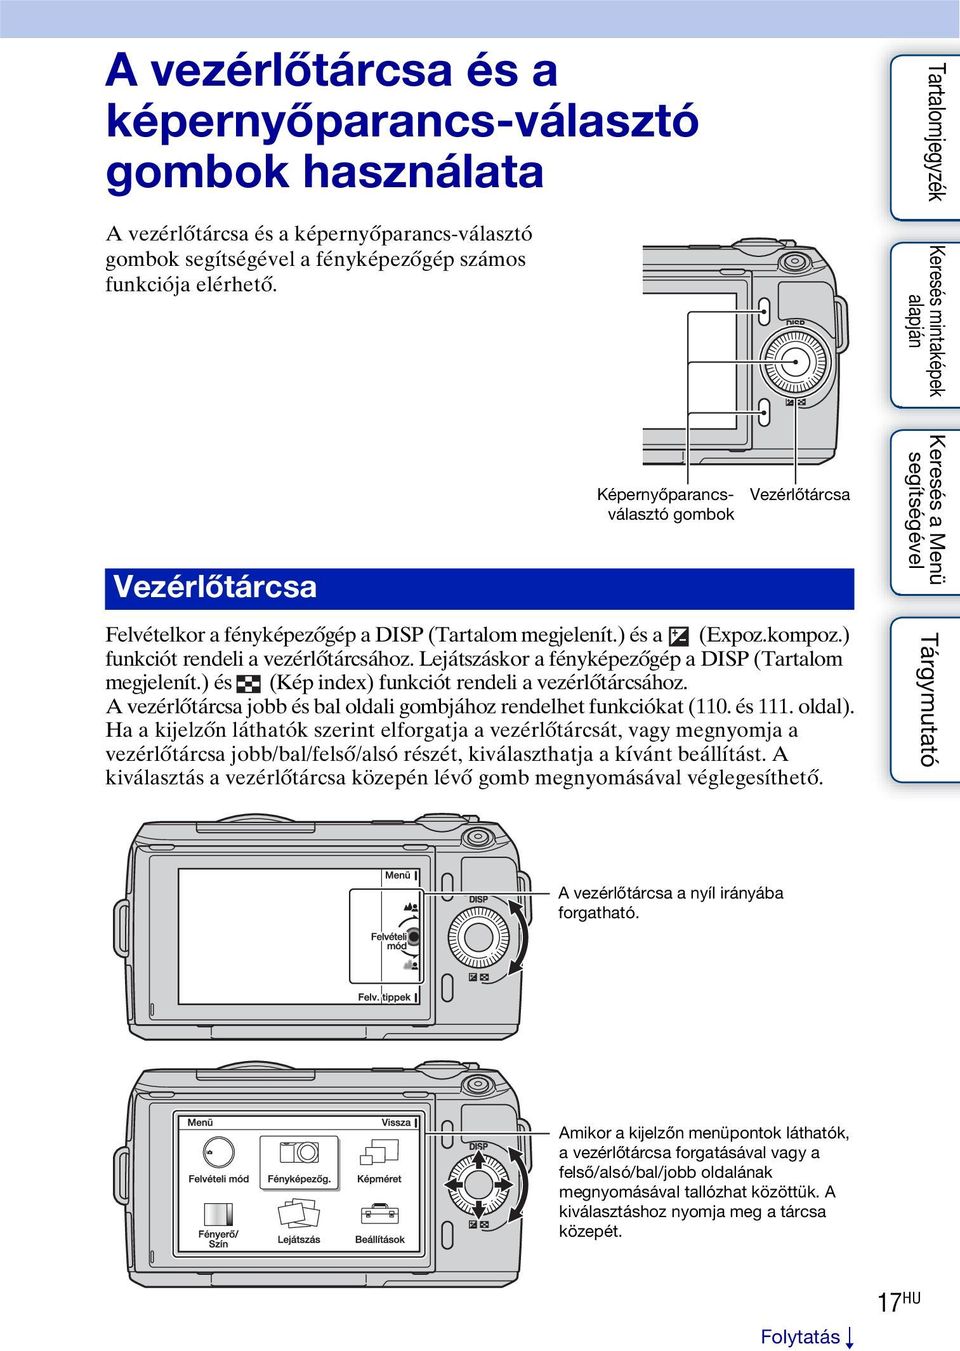 Lejátszáskor a fényképezőgép a DISP (Tartalom megjelenít.) és (Kép index) funkciót rendeli a vezérlőtárcsához. A vezérlőtárcsa jobb és bal oldali gombjához rendelhet funkciókat (110. és 111. oldal).